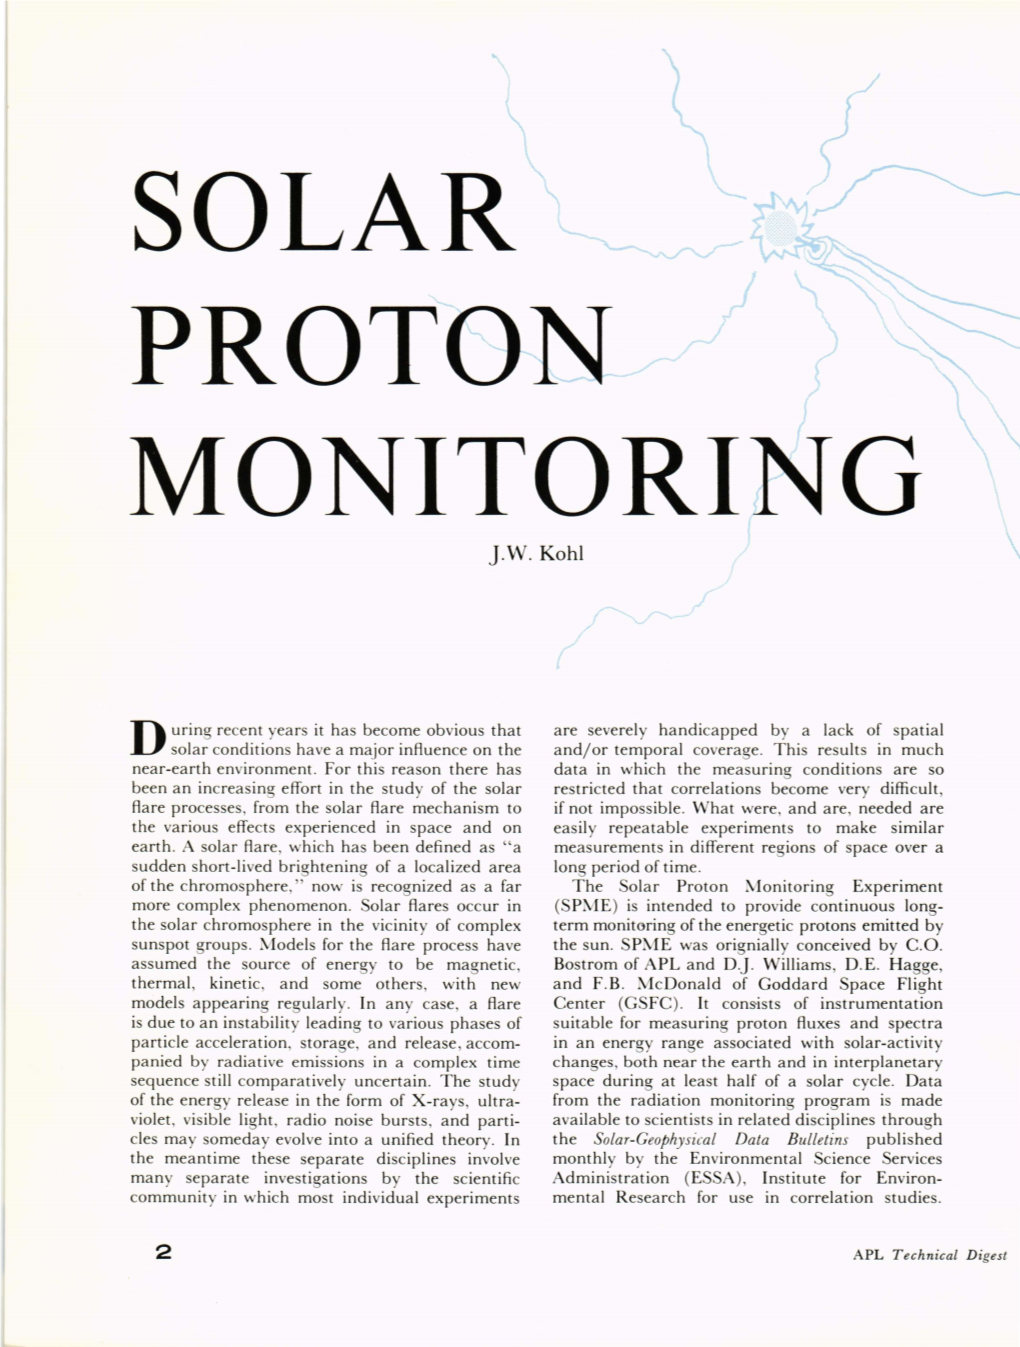 Solar Proton Monitoring Experiment More Complex Phenomenon